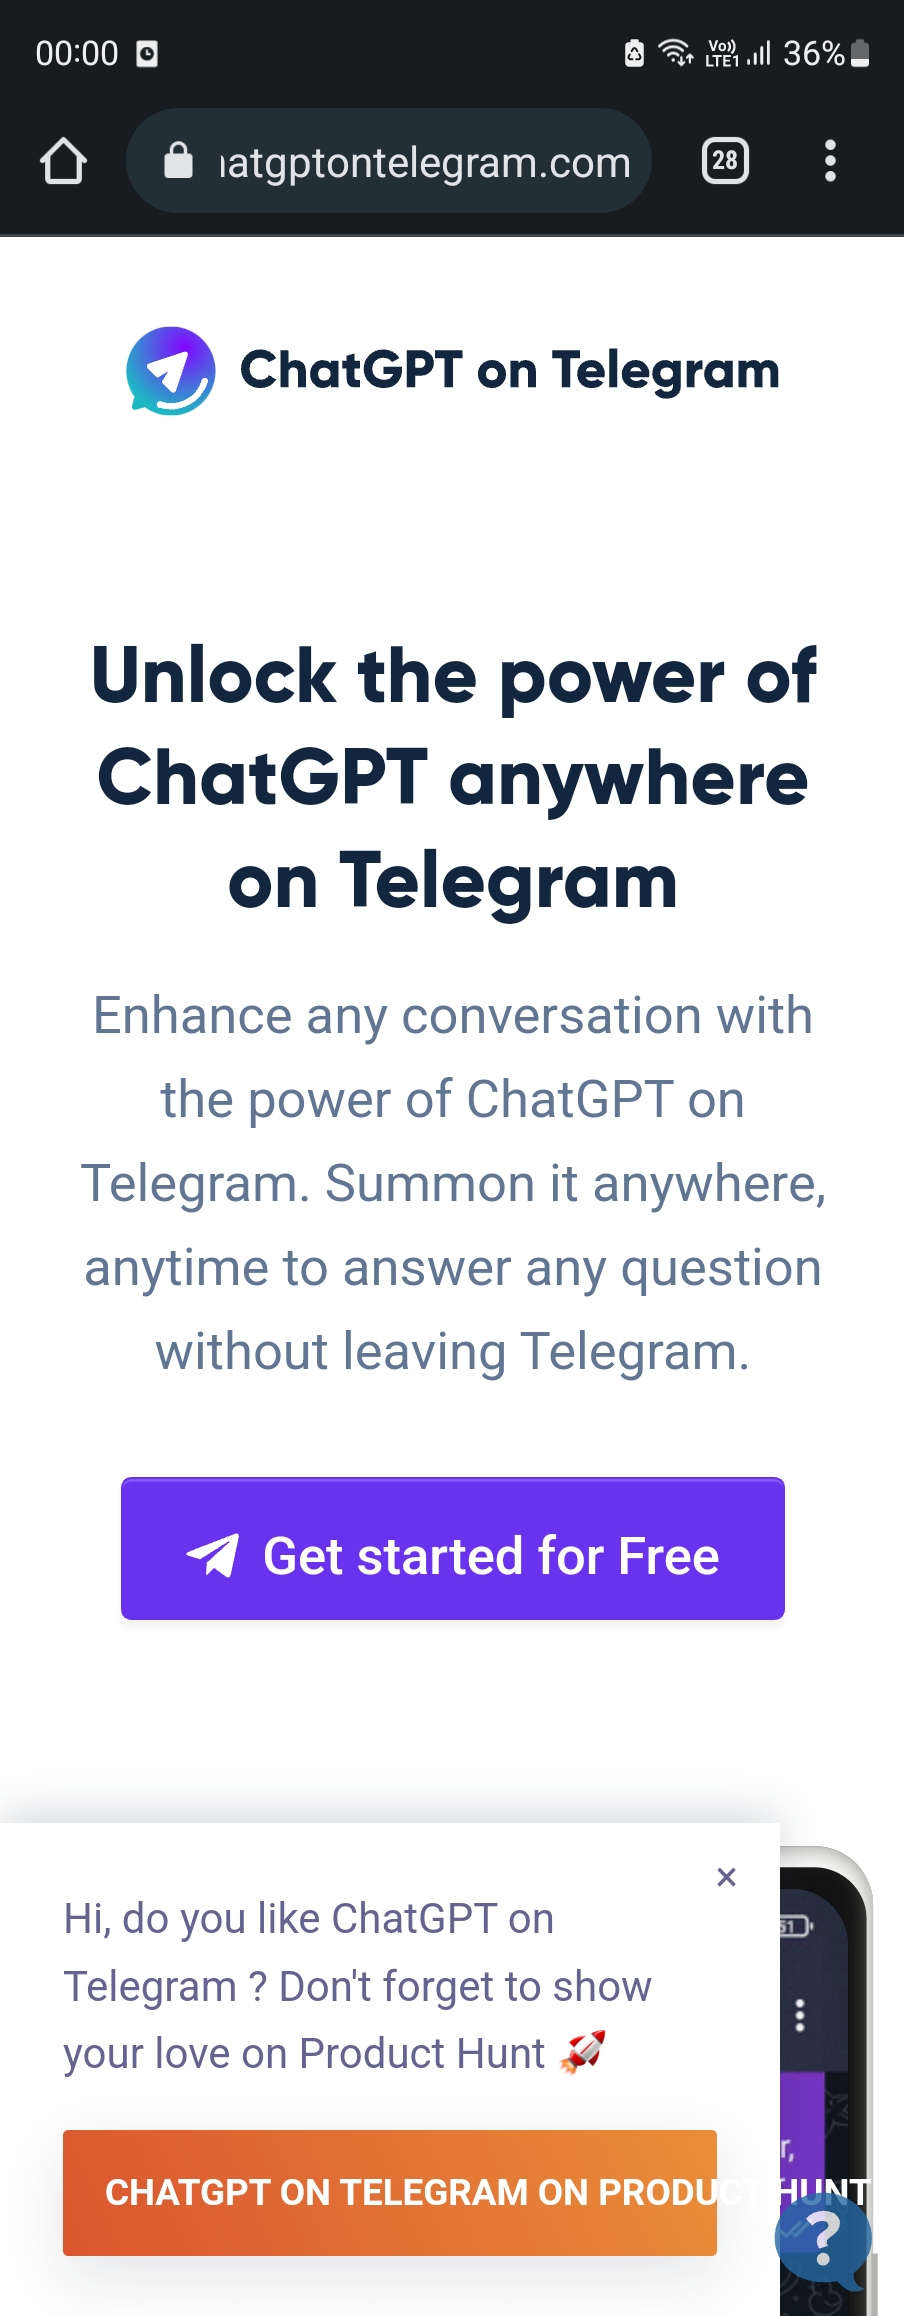 وب سایت رسمی ربات ChatGPTonTelegram